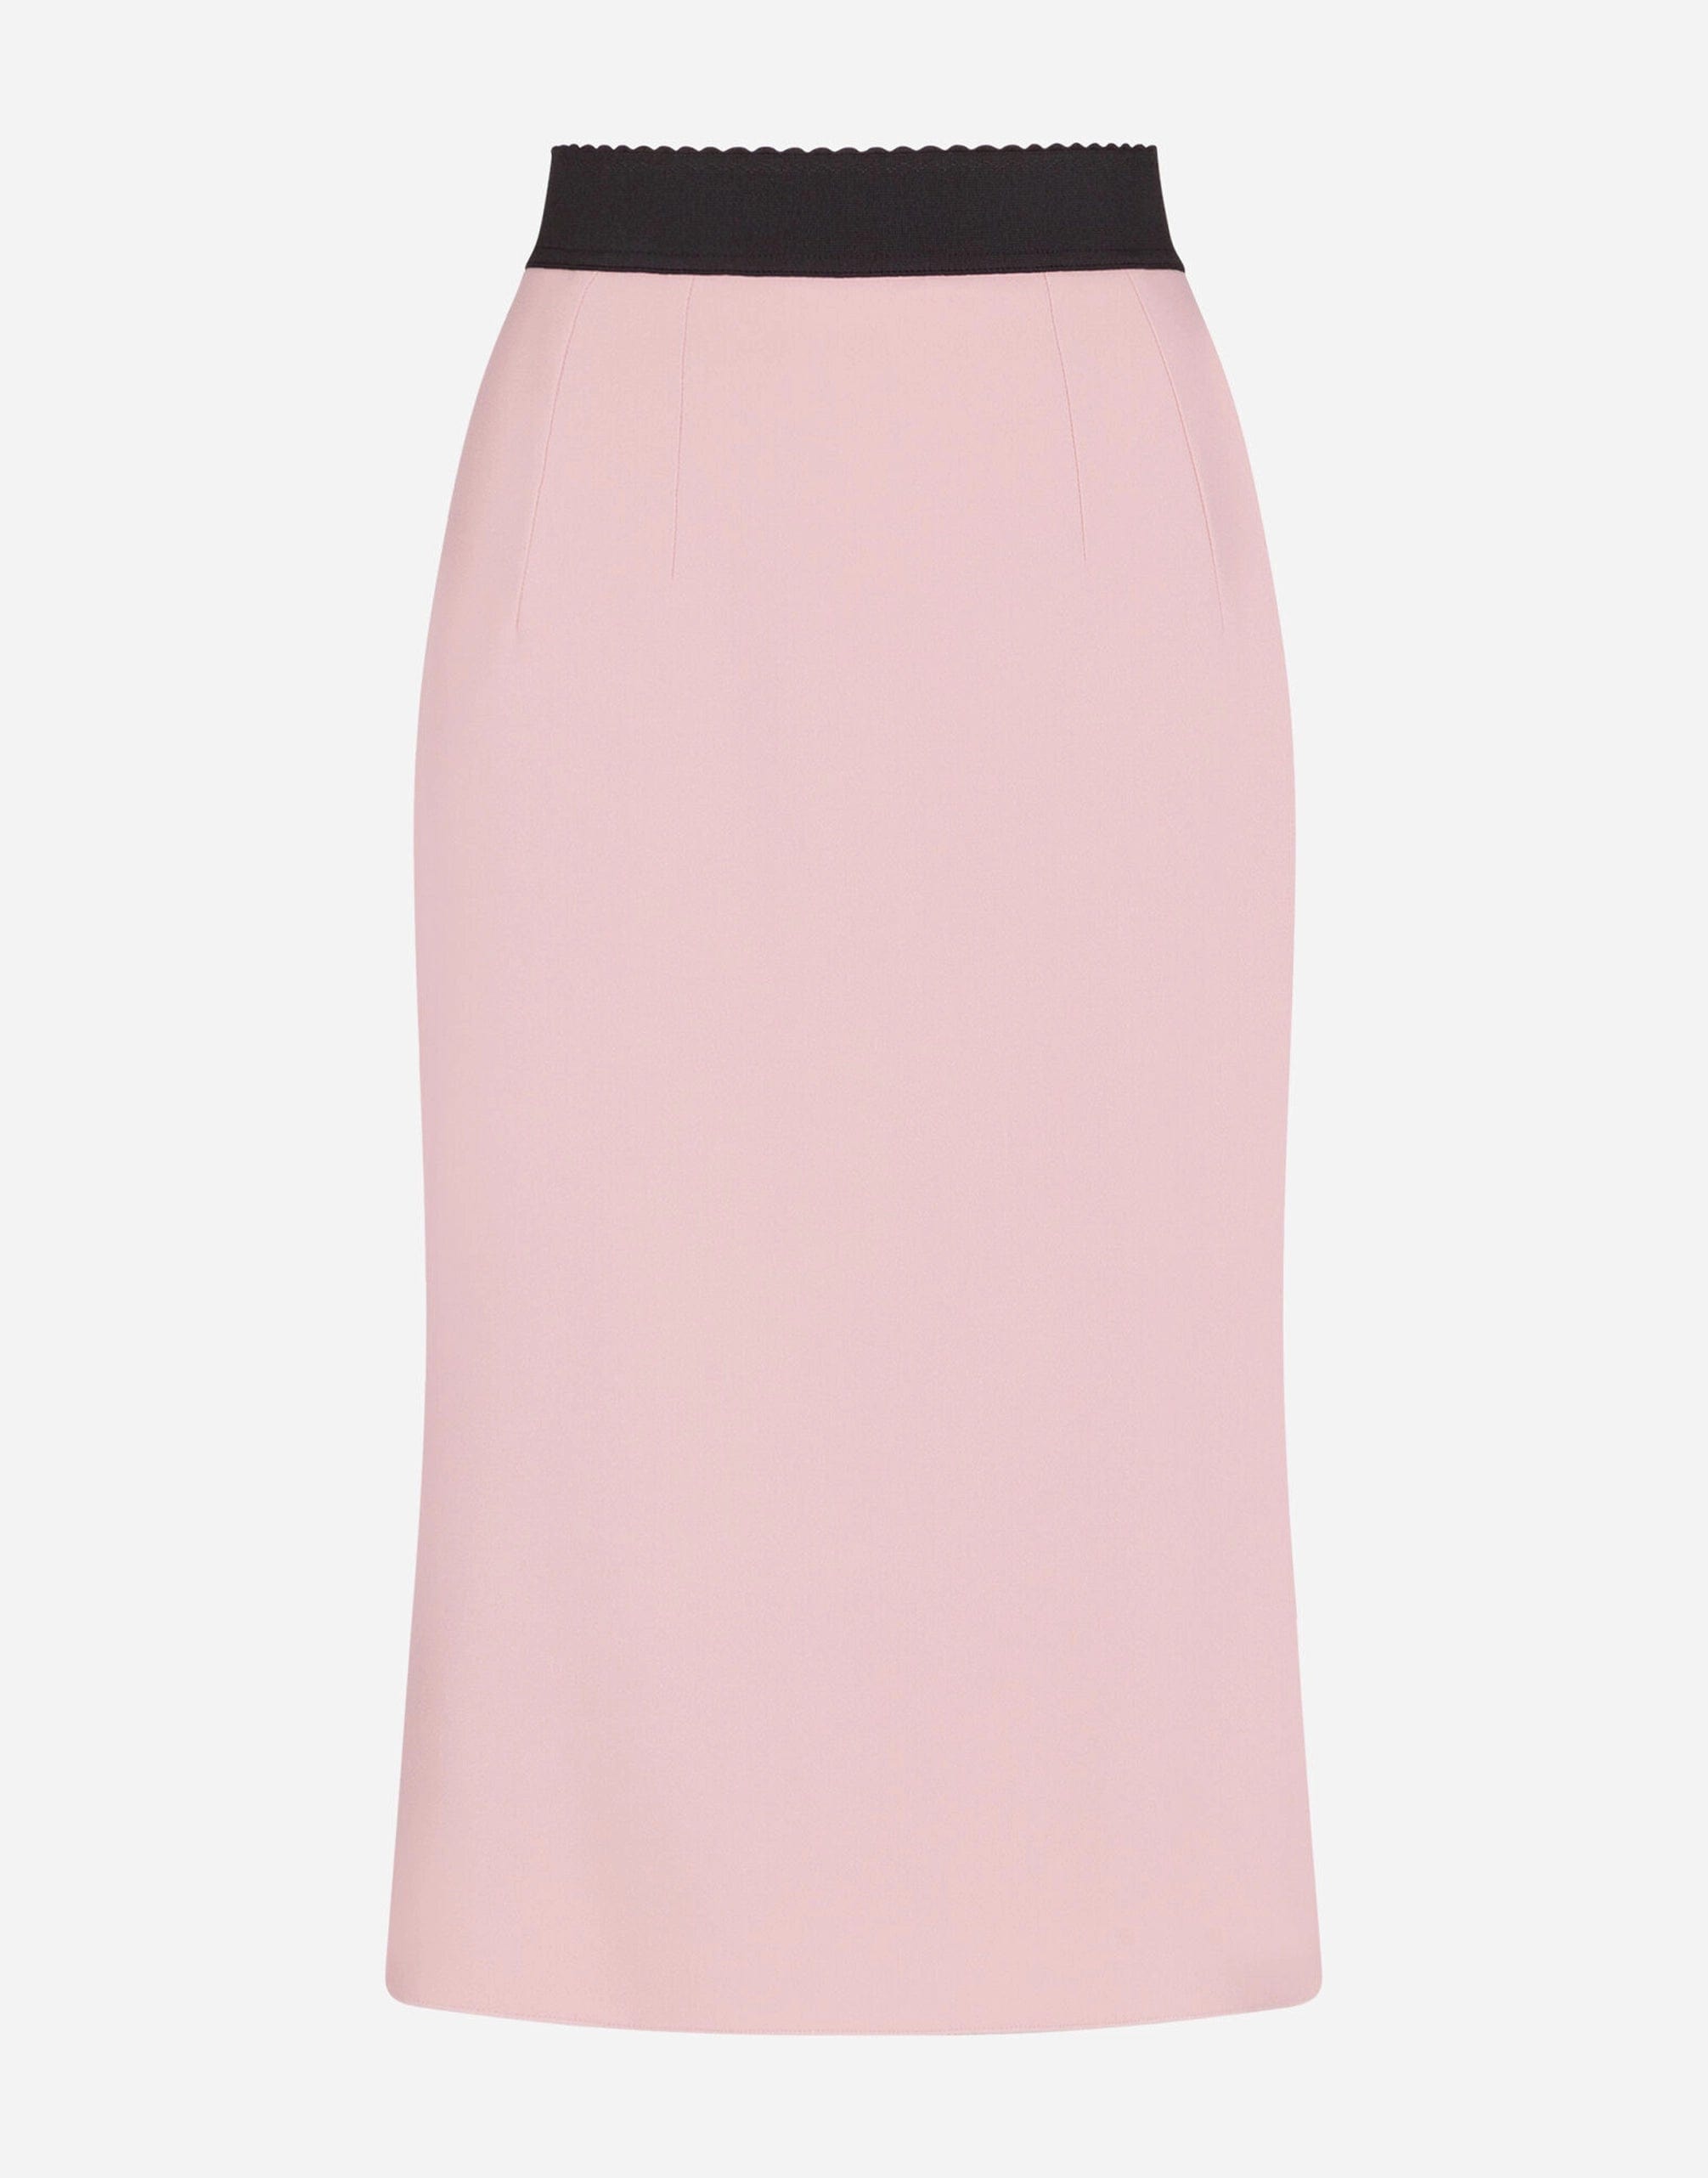 Dolce & Gabbana Scallop-Edge Waistband Skirt